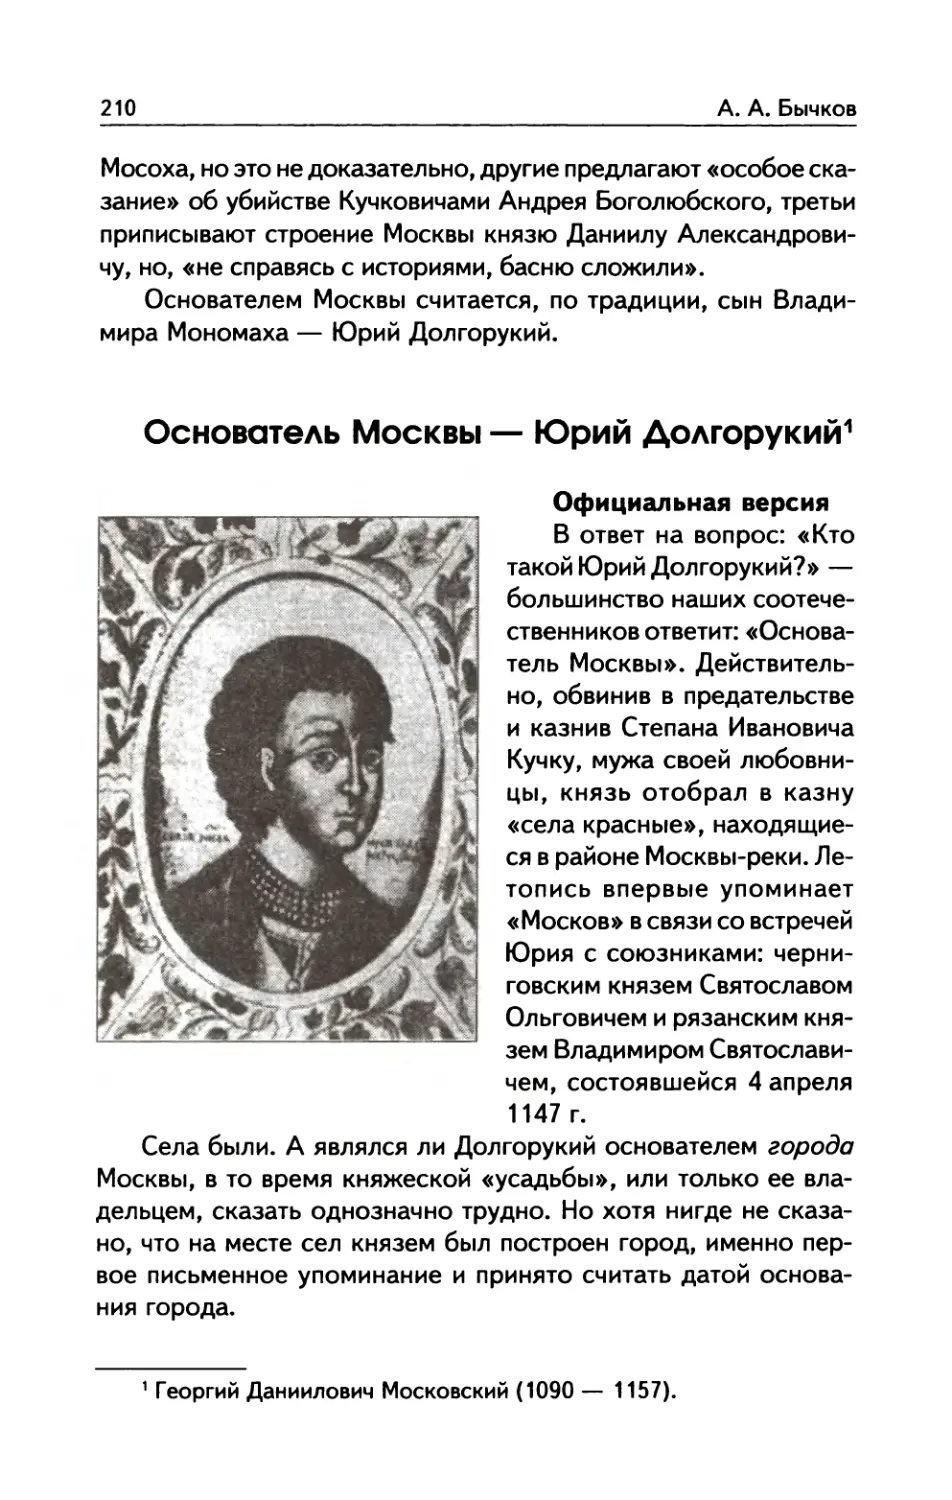 Основатель  Москвы  —  Юрий  Долгорукий